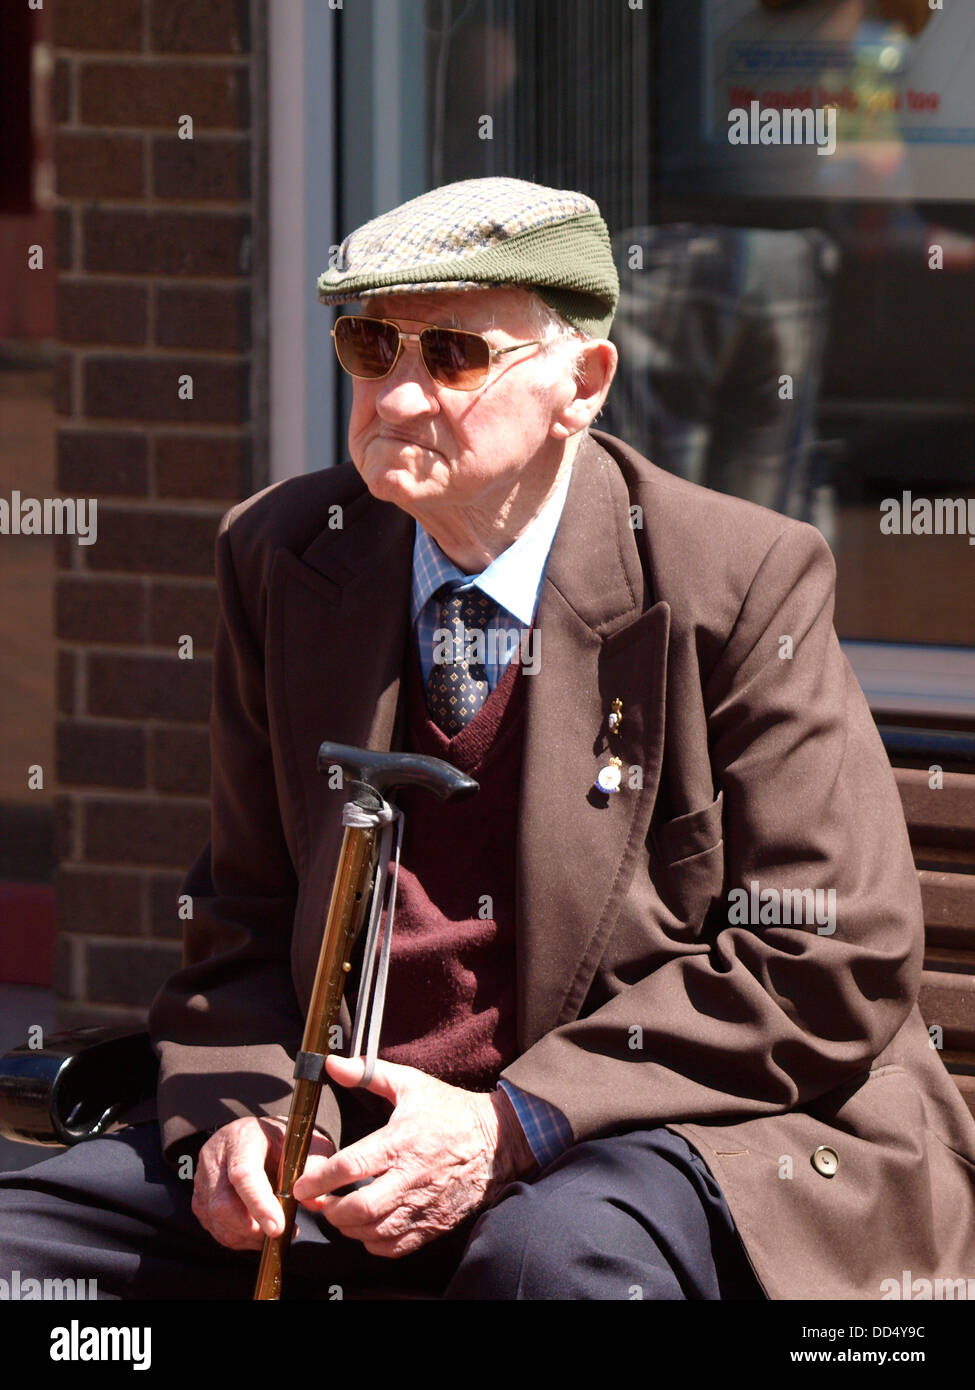 Ritratto di un uomo vecchio, Regno Unito 2013 Foto Stock